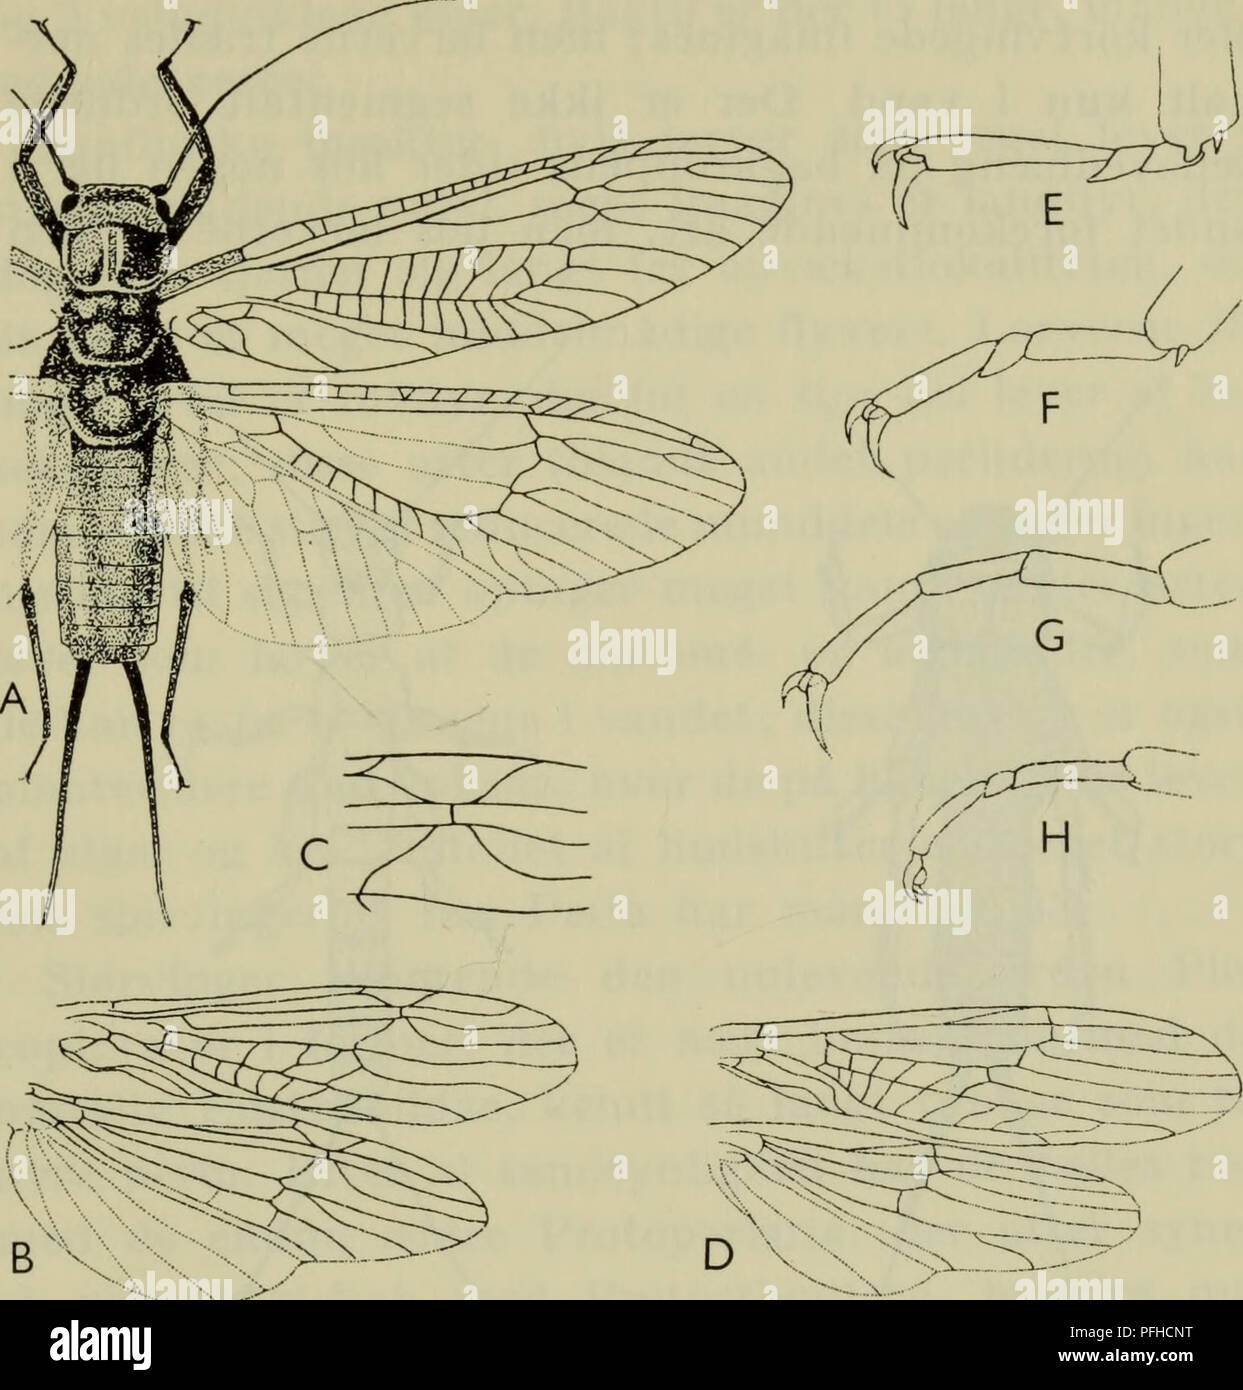 . Danmarks fauna; illustrerede haandbøger over den danske dyreverden... 225. Pig. 82. Slørvinger. A Perla; B vinger af Nemura; C detalje i for- vingen af Nemura; D Vinger af Leuctra; fod af Perla (E), Gapnia (F), Taeniopteryx (G) og Nemura (H). eller vingeløse imagines, først og fremmest blandt hannerne. Benene er ret kraftige med 3-leddede fød- der og 2 kløer. Bagkroppen er 11-leddet, men det sidste led er stærkt reduceret og skjult. Gercerne er lange og mangeleddede hos de fleste familier; hos enkelte er de stærkt reducerede og uleddede og står delvis i parringens tjeneste. Noget egentligt p Stock Photo